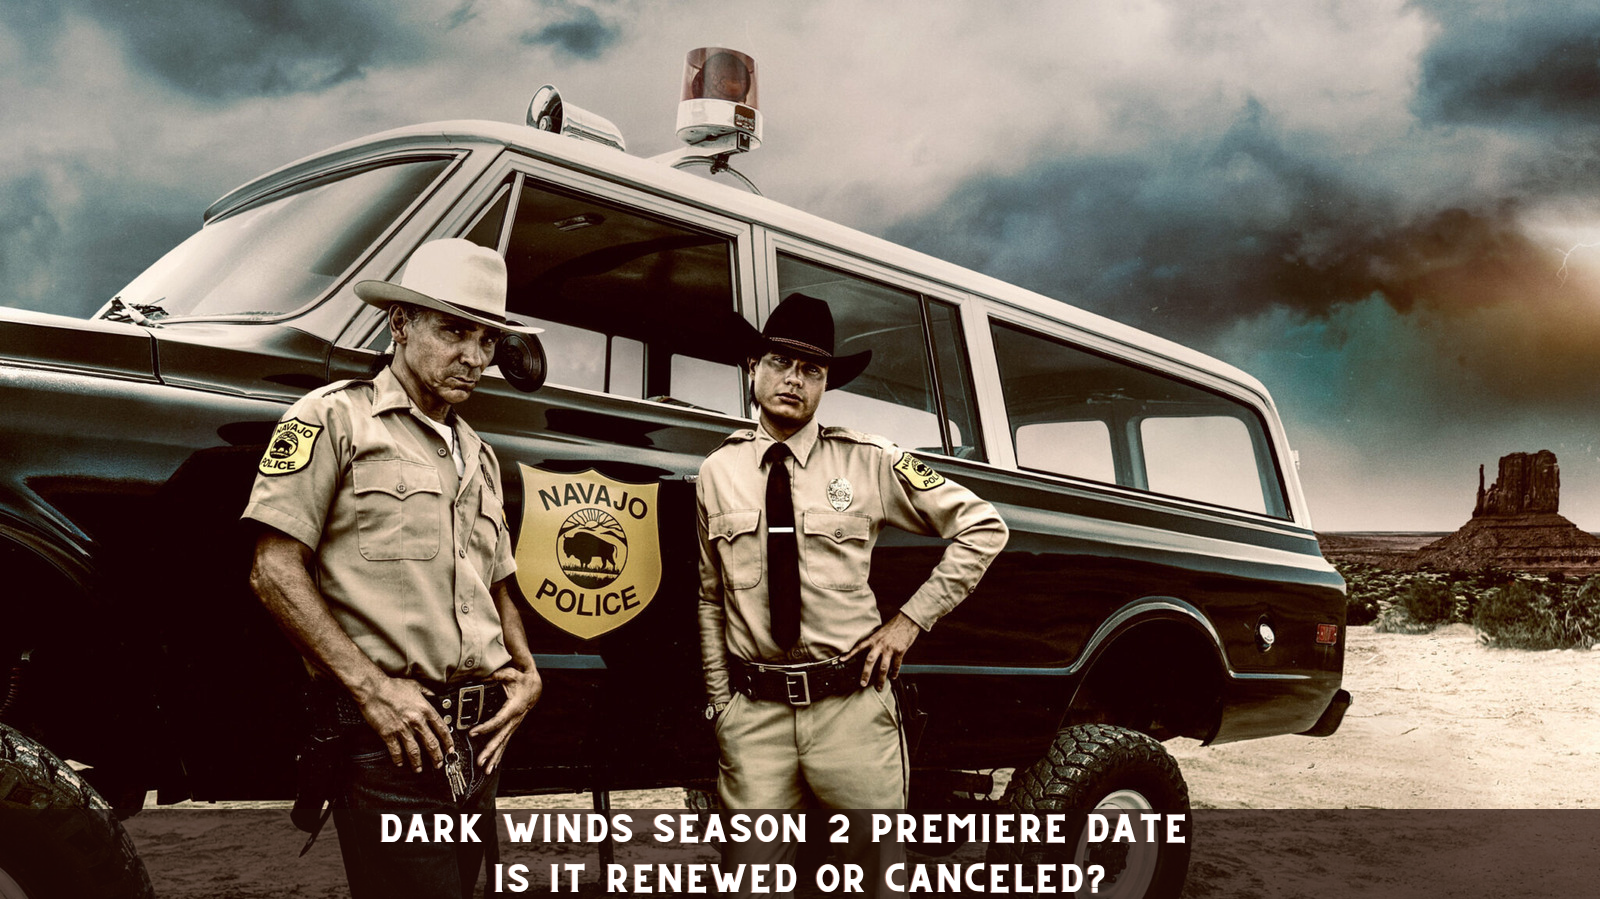 Dark Winds Season 2 Premiere Date - Is it Renewed or Canceled?